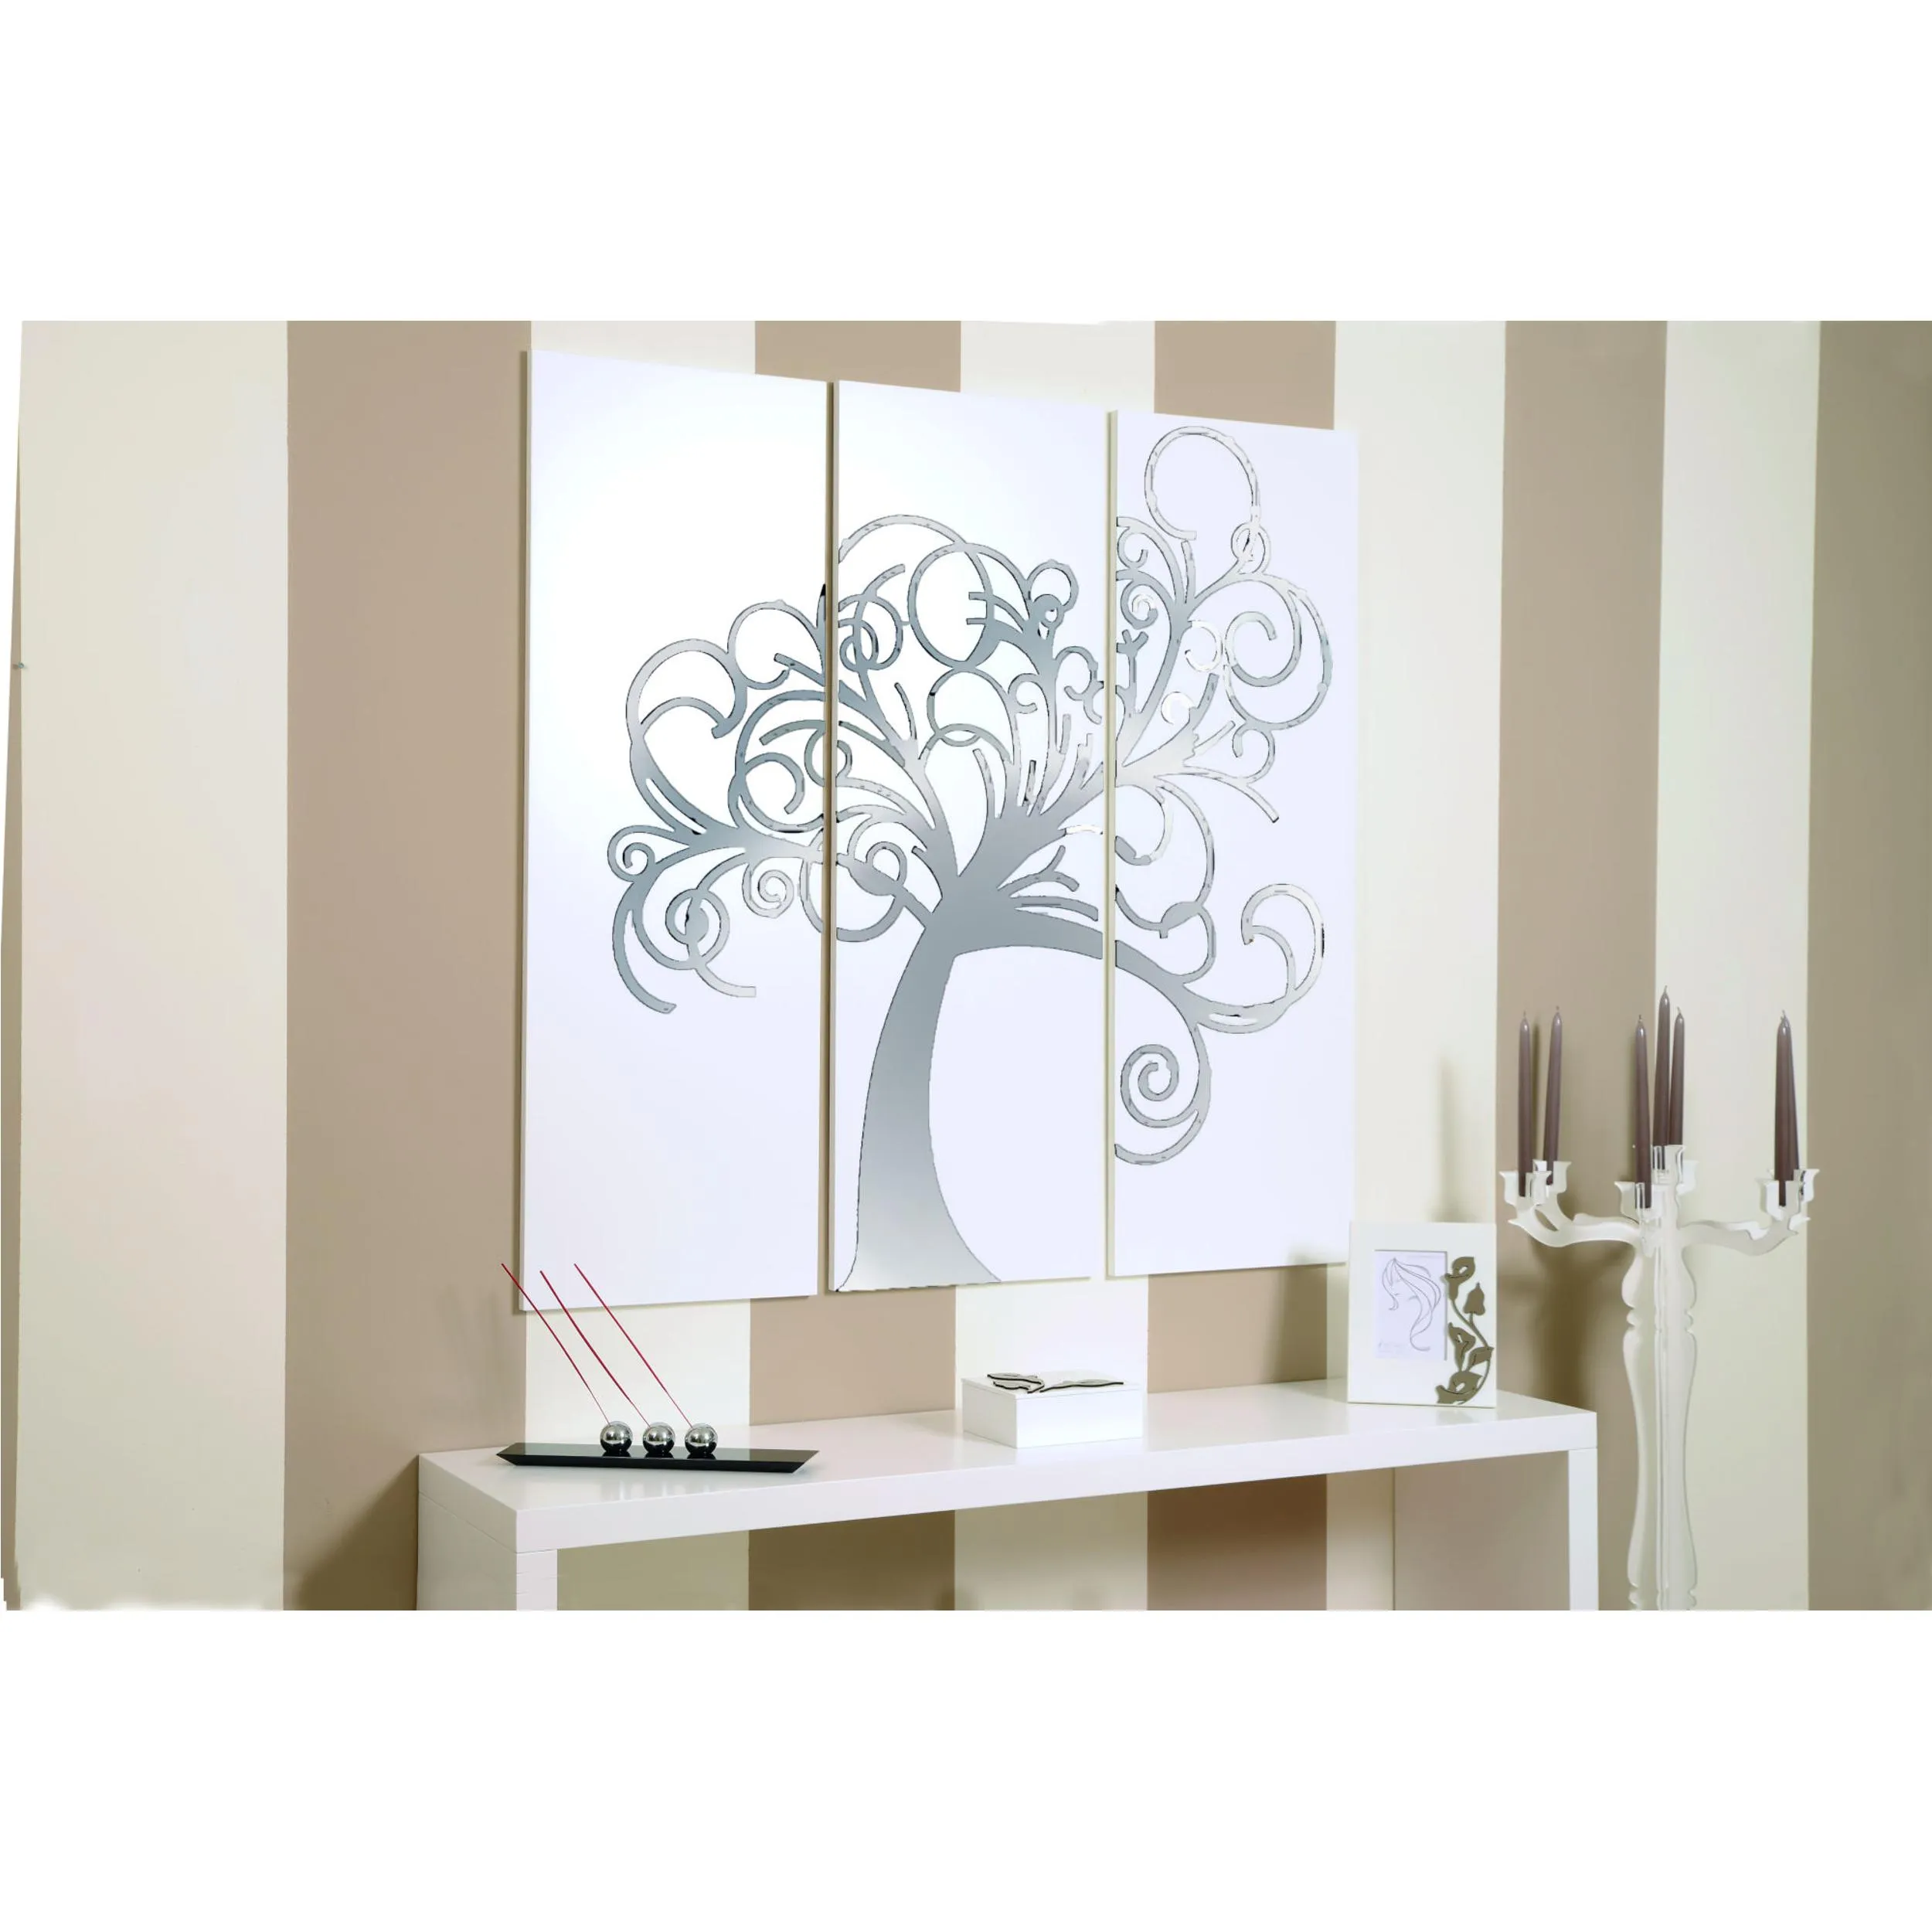 Pannelli da parete tris L'albero della vita 120xh120cm in legno colore bianco con intarsi in plexiglass a Specchio